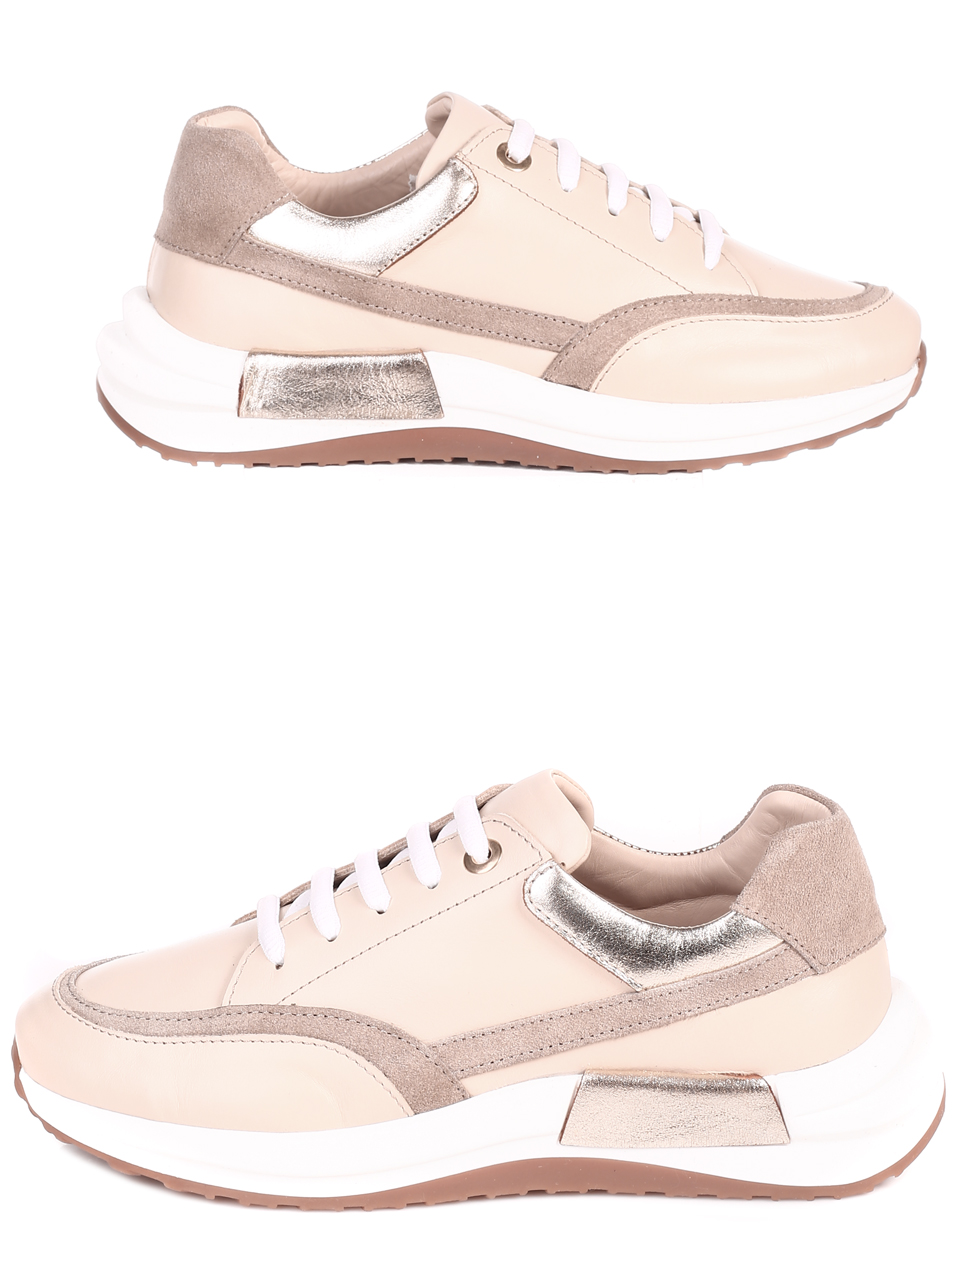 Ежедневни дамски комфортни обувки от естествена кожа в бежово 3AT-22303 beige